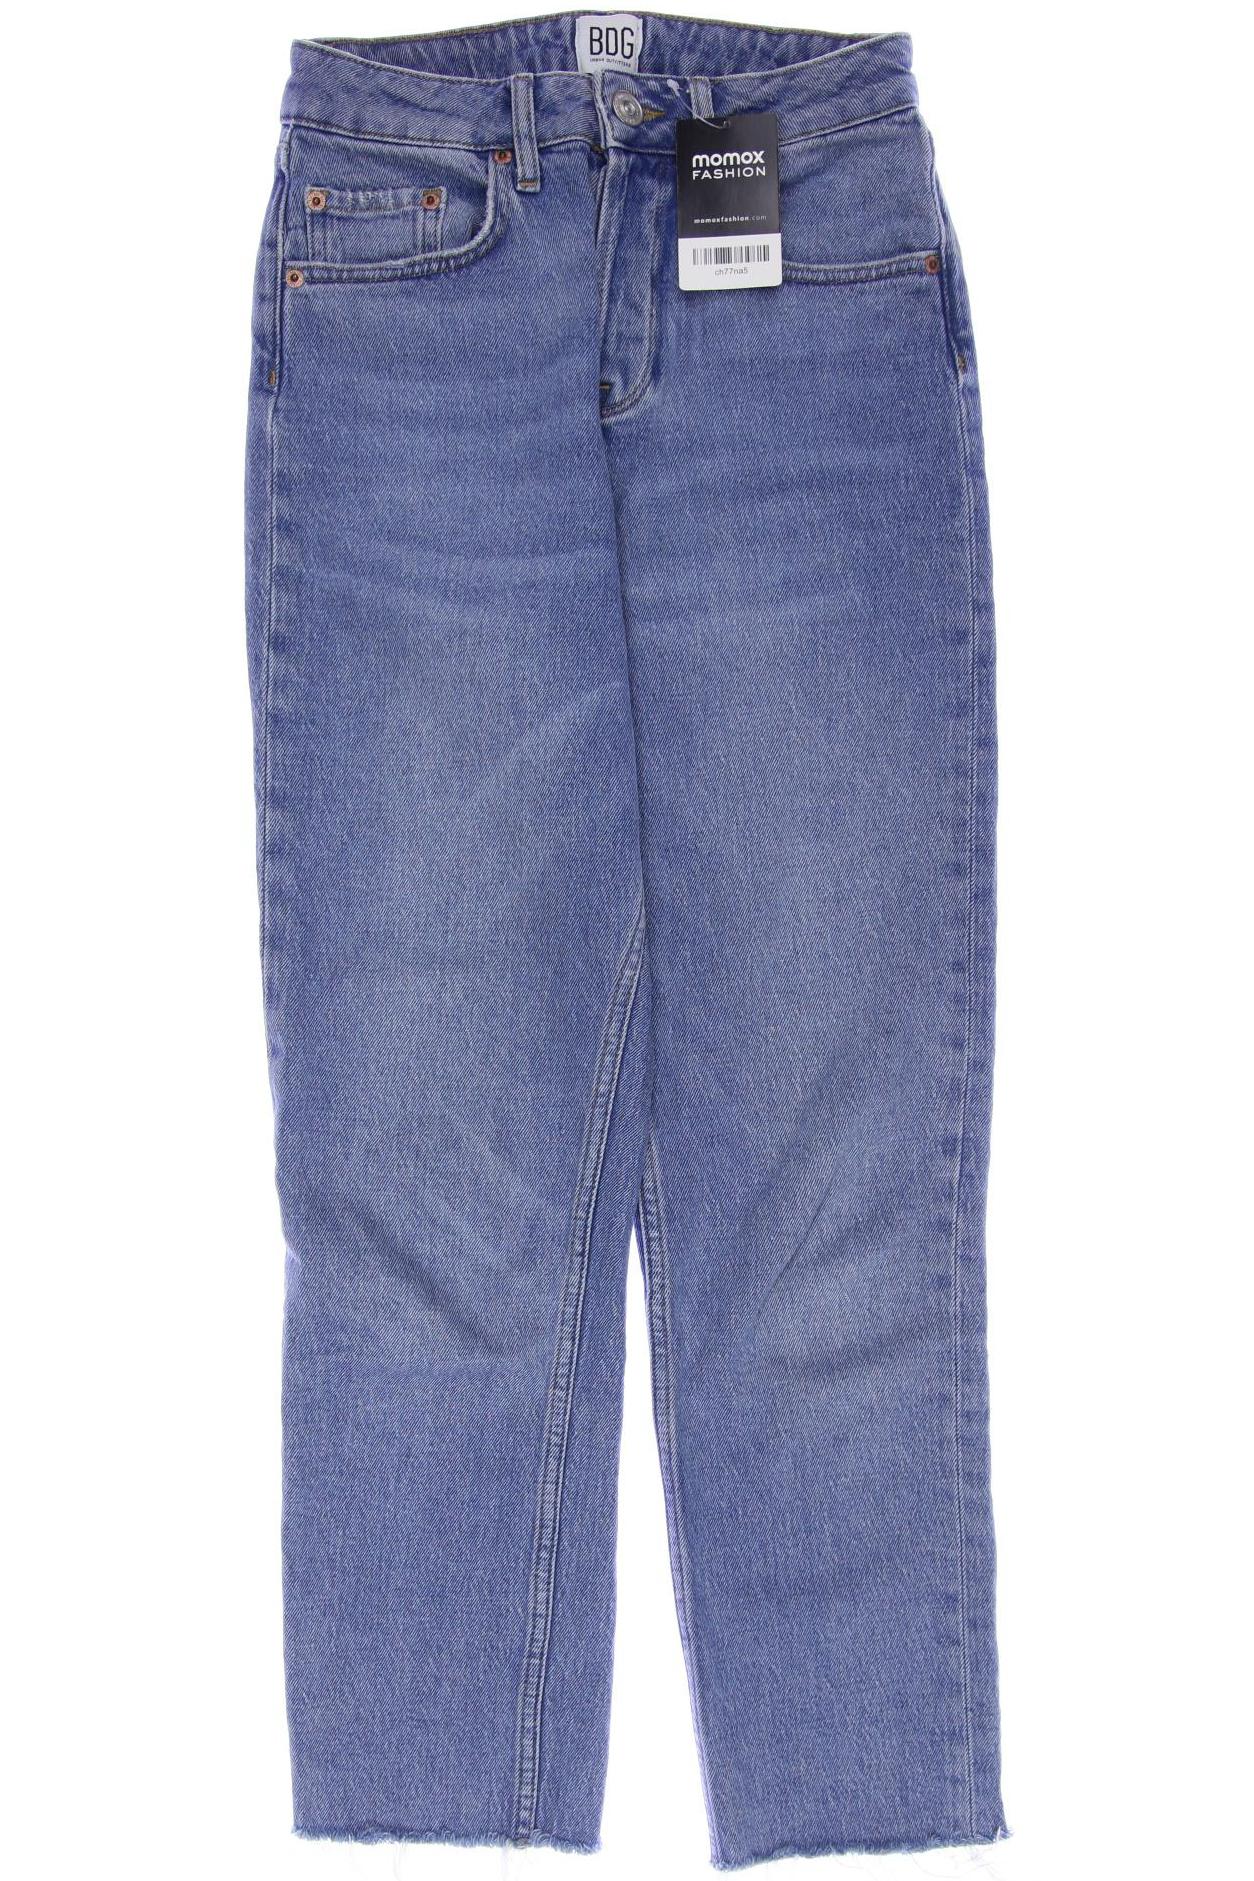 BDG Urban Outfitters Damen Jeans, blau, Gr. 34 von BDG Urban Outfitters